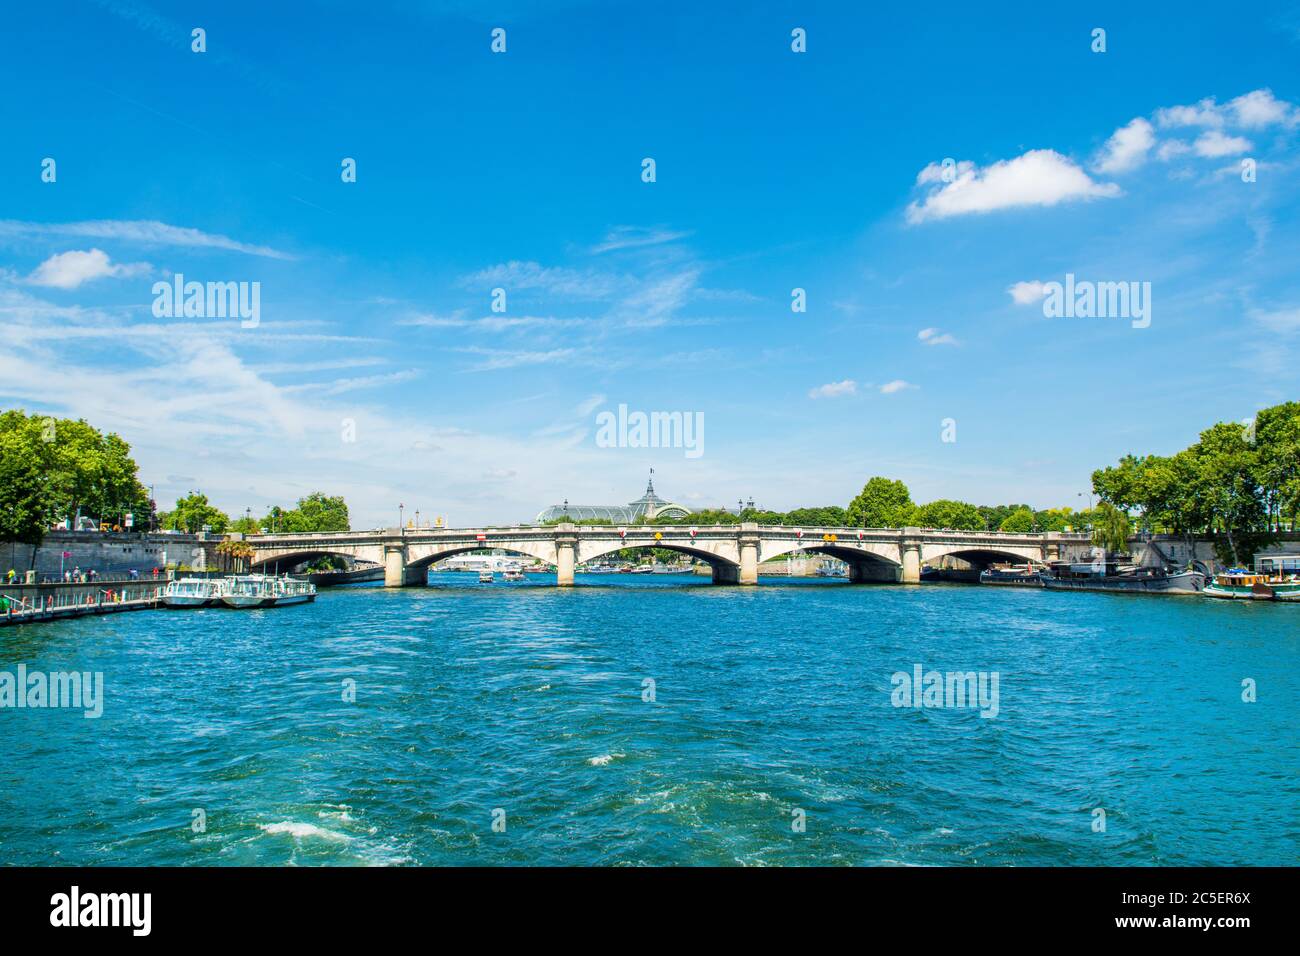 Paris, France - 25 June 2019: Landscape with The Pont de la Concorde bridge over River Seine, connecting the Quai des Tuileries and the Quai d'Orsay Stock Photo